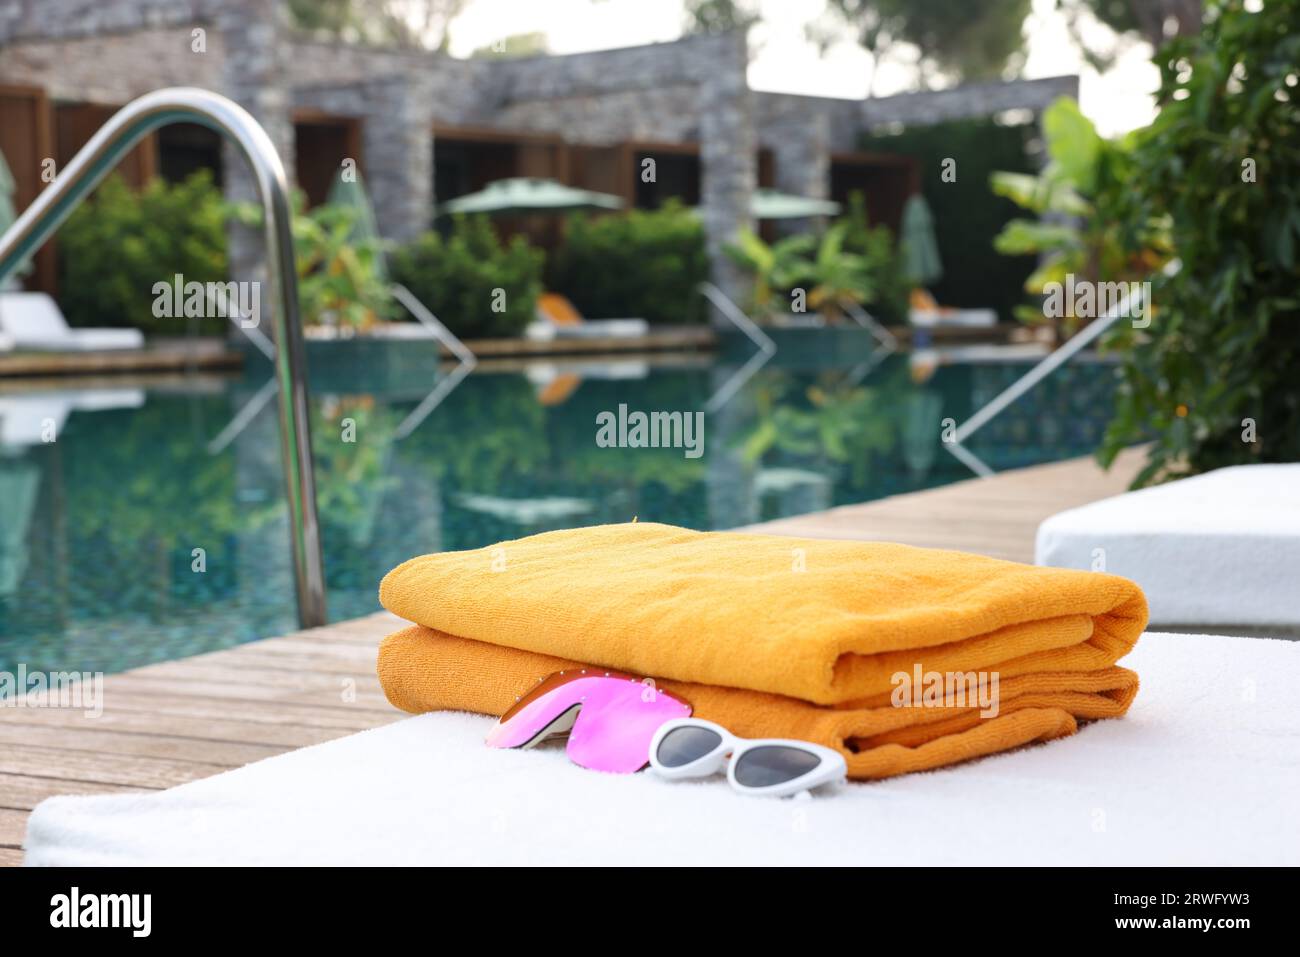 Toalla de piscina fotografías e imágenes de alta resolución - Alamy